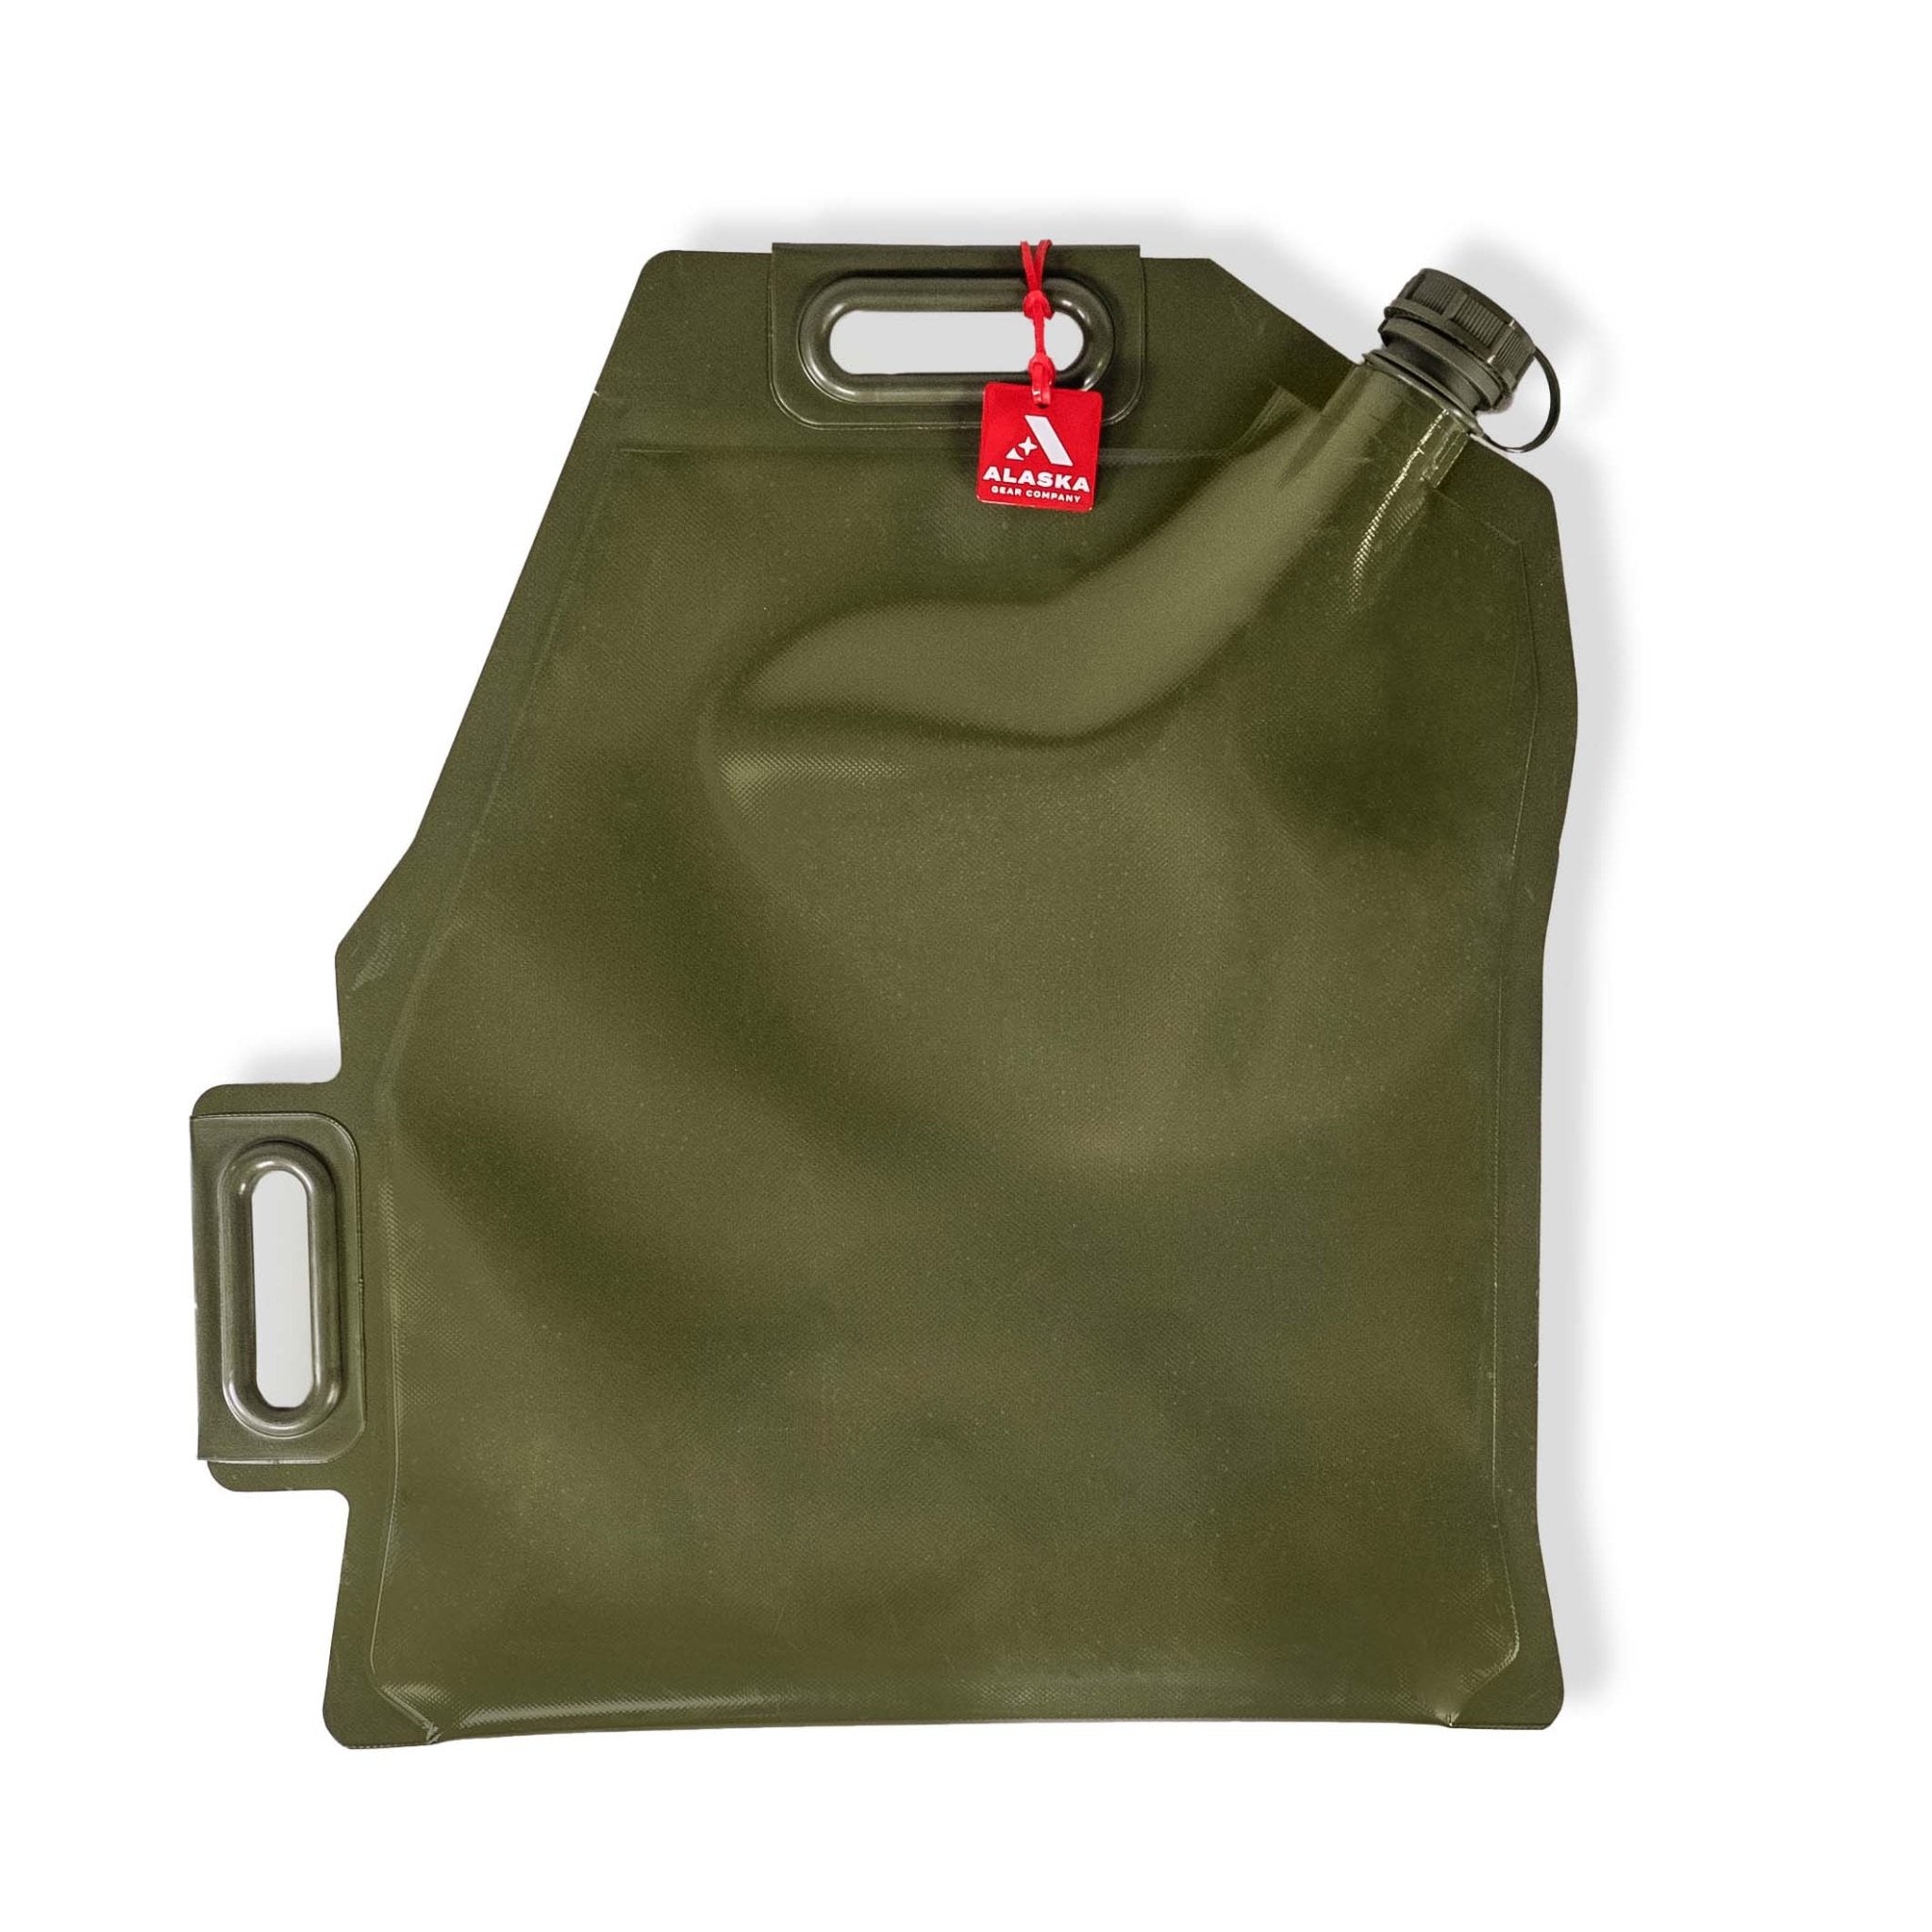 Alaska Gear Company Liquid Containment Bag -